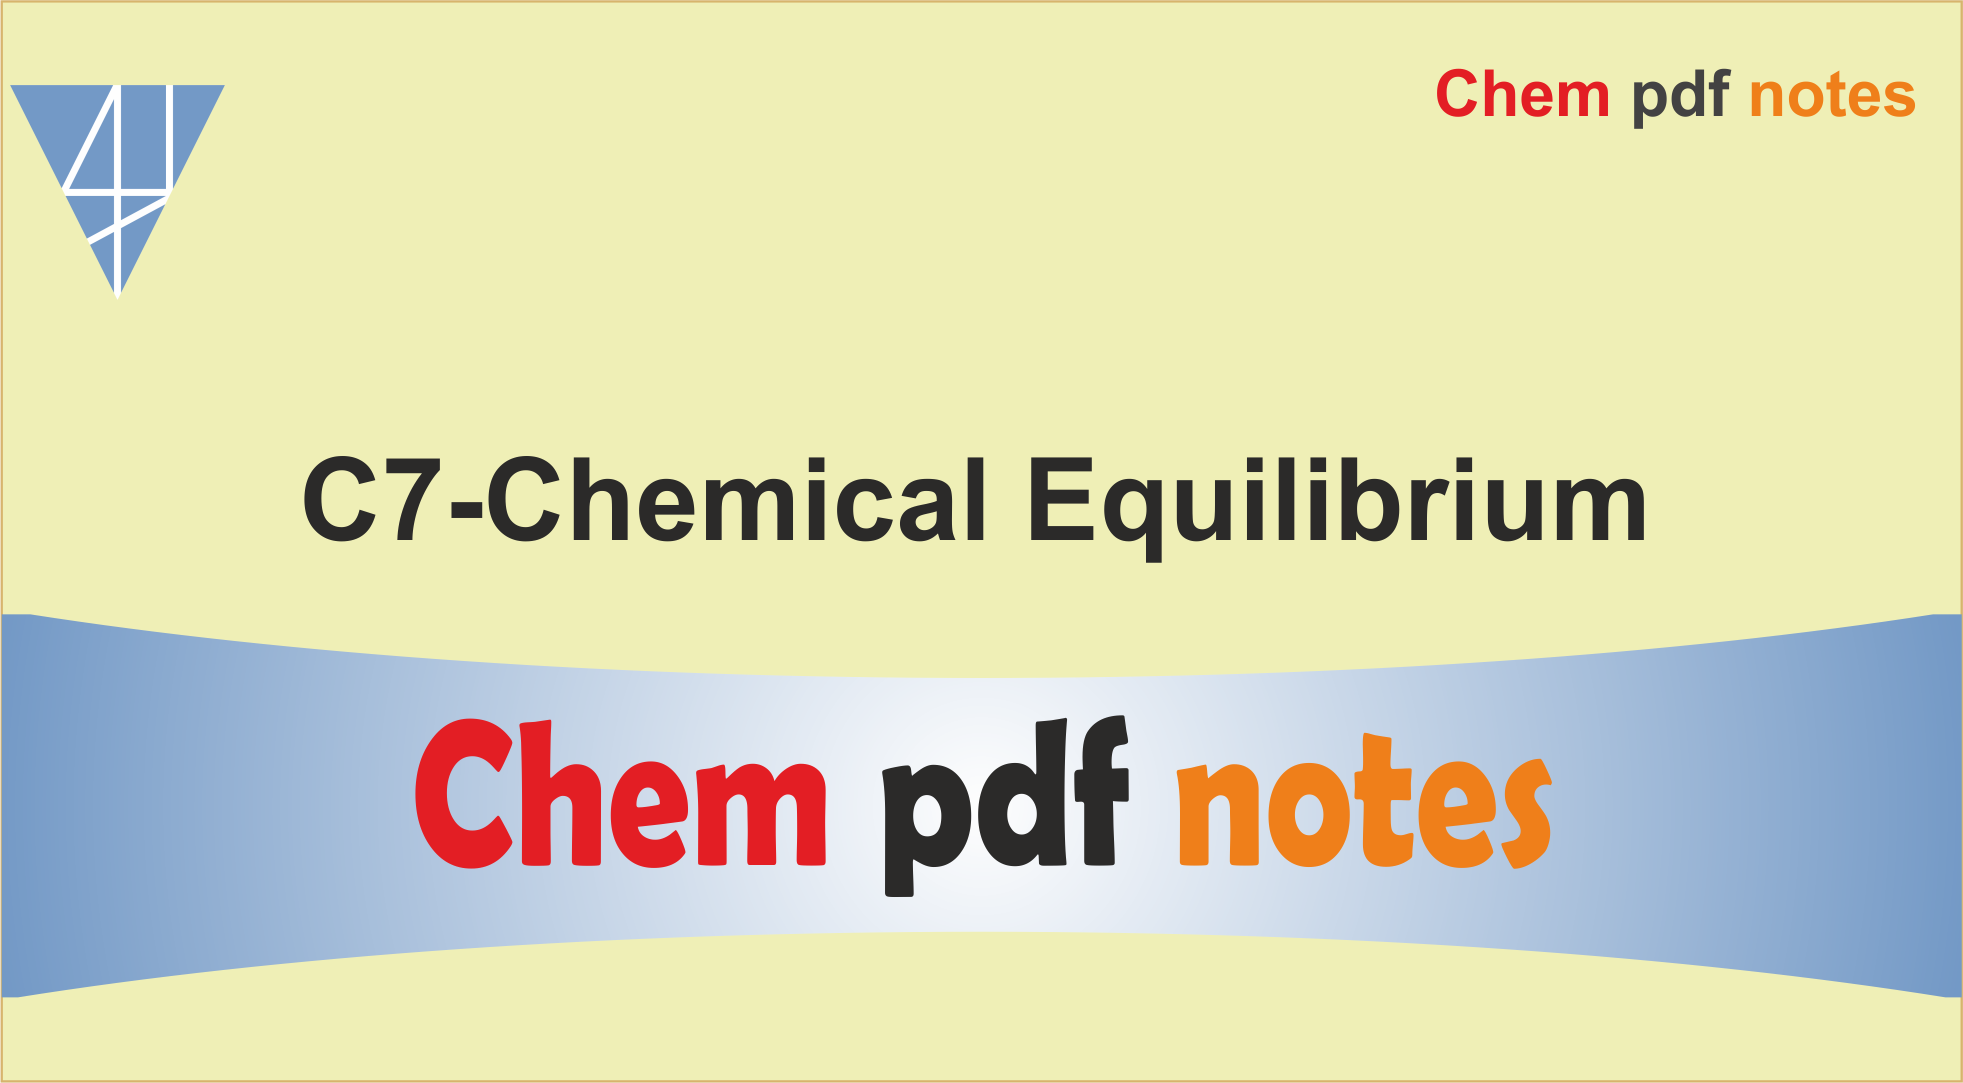 C7-Chemical Equilibrium